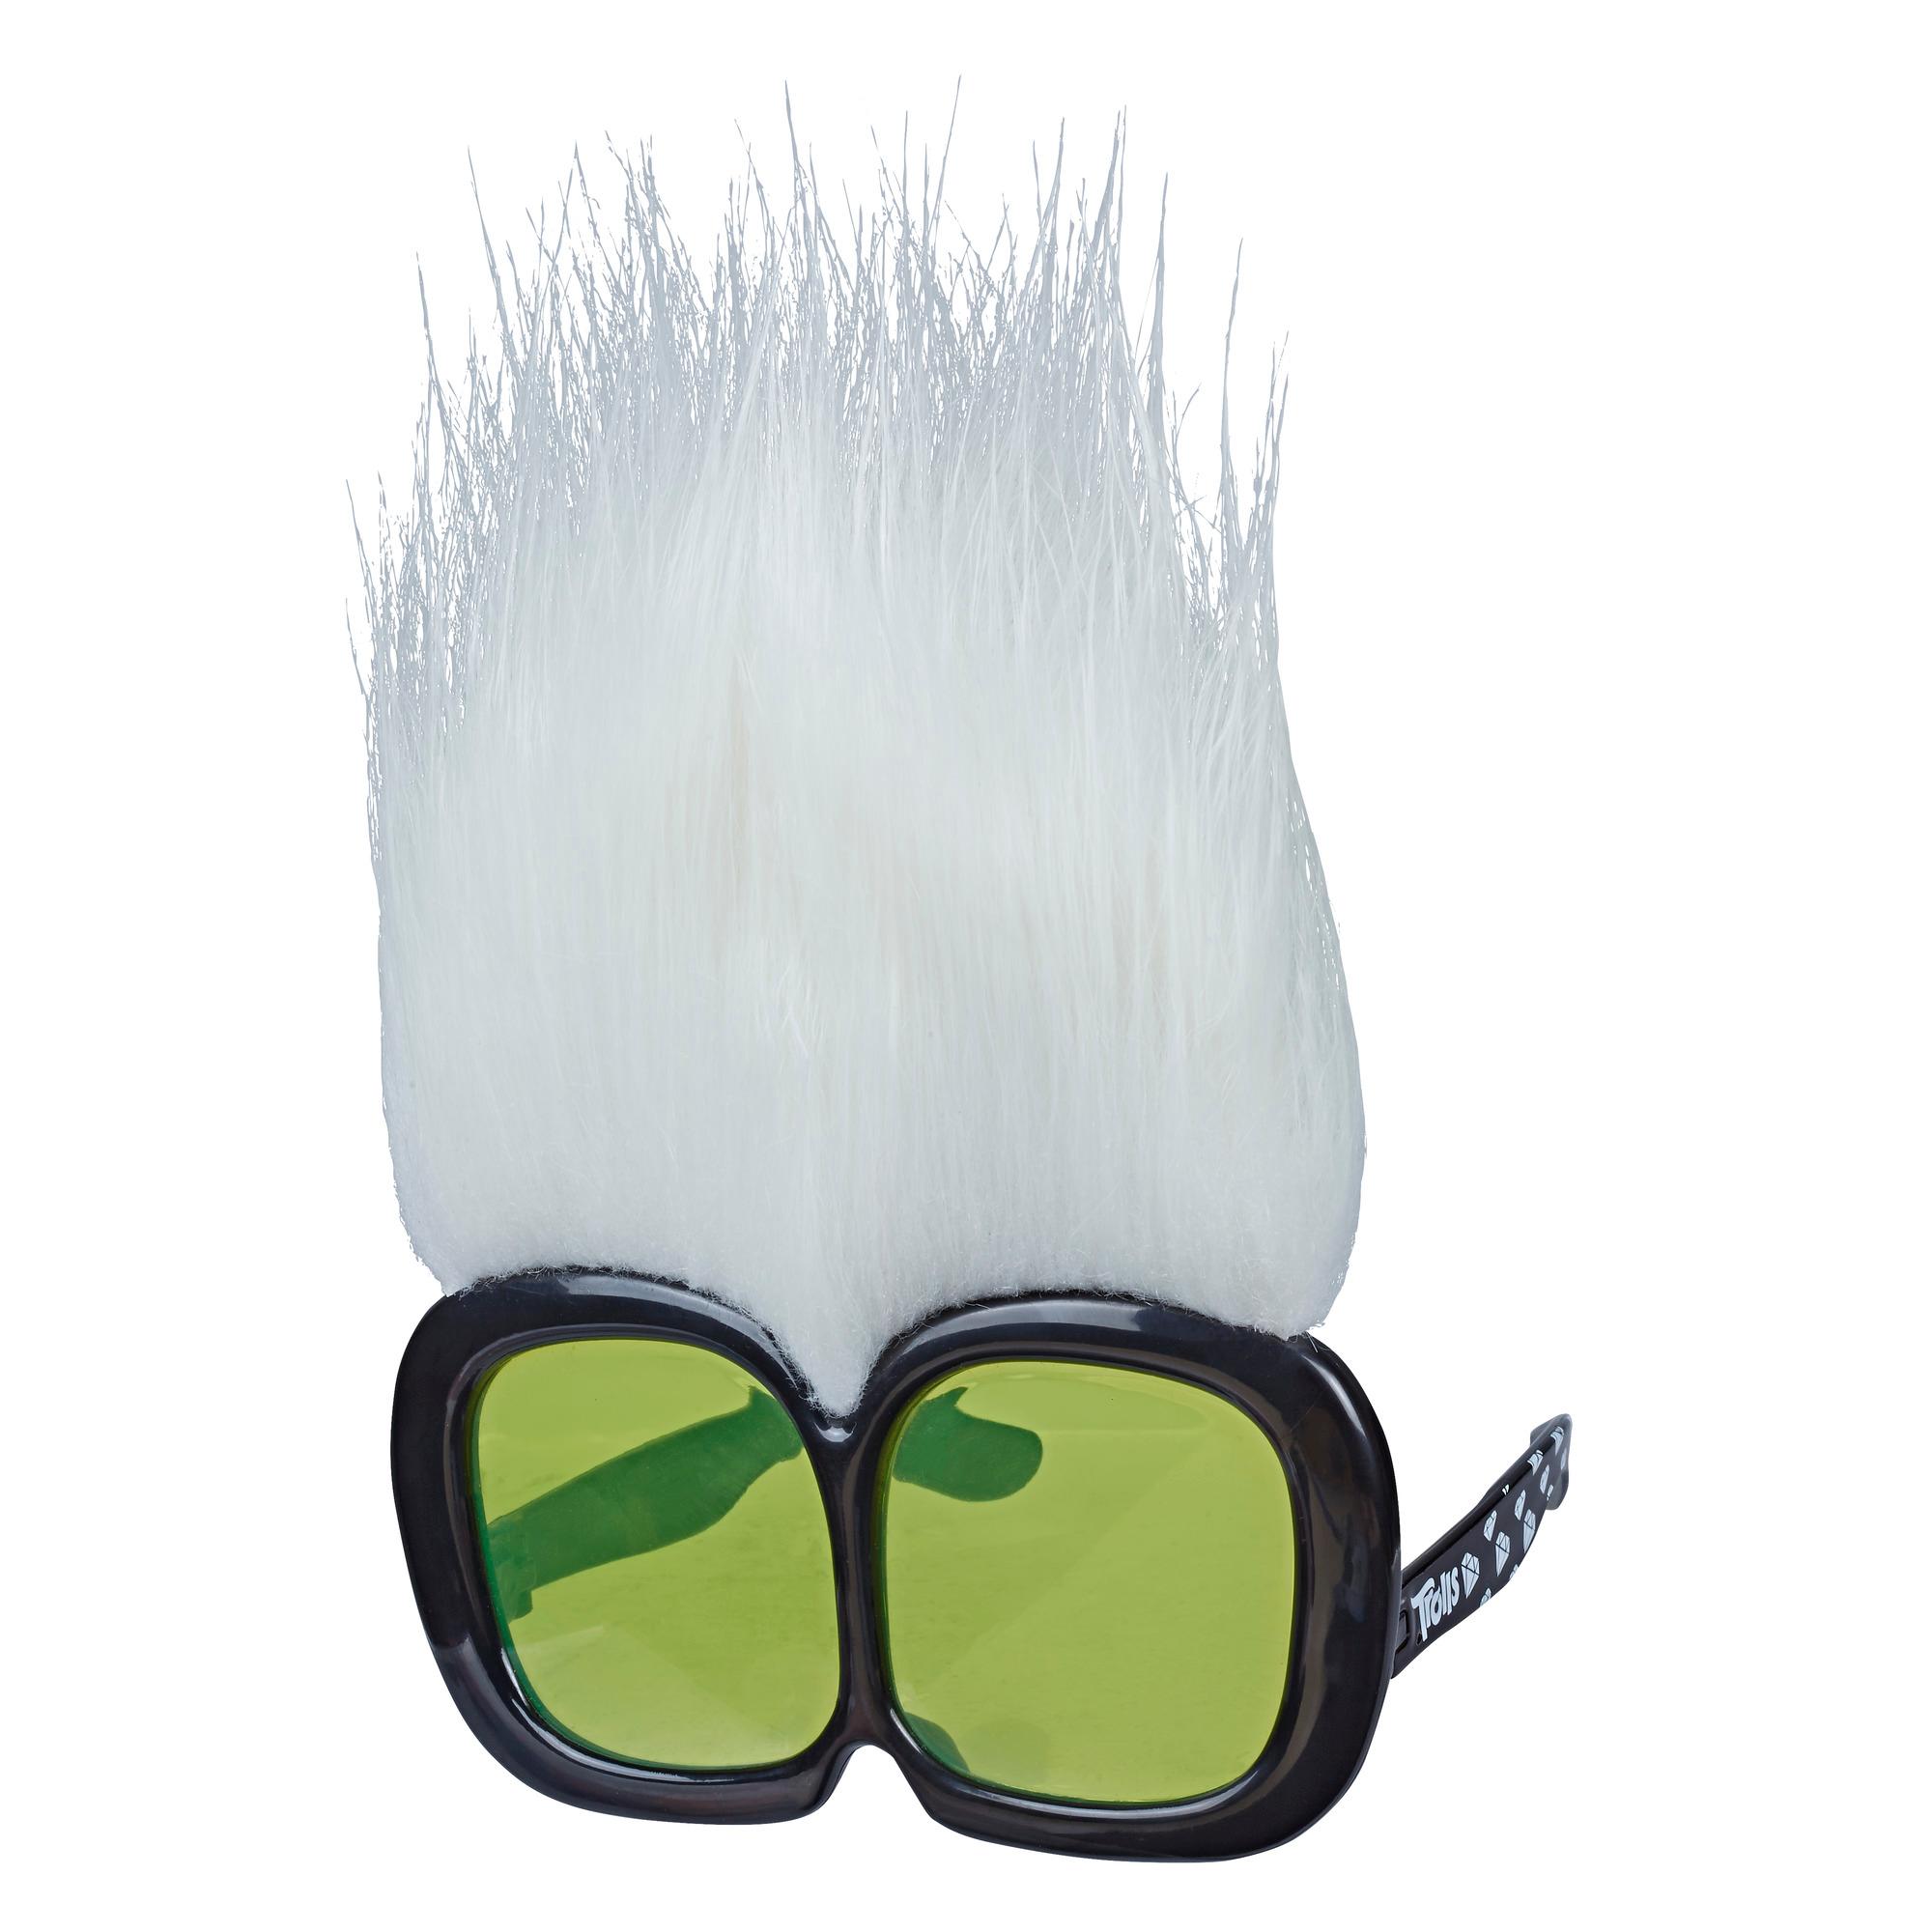 Les Trolls de DreamWorks, Lunettes de Mini Guy Diamant, lunettes de soleil amusantes inspirées du film Trolls a Tournée Mondiale